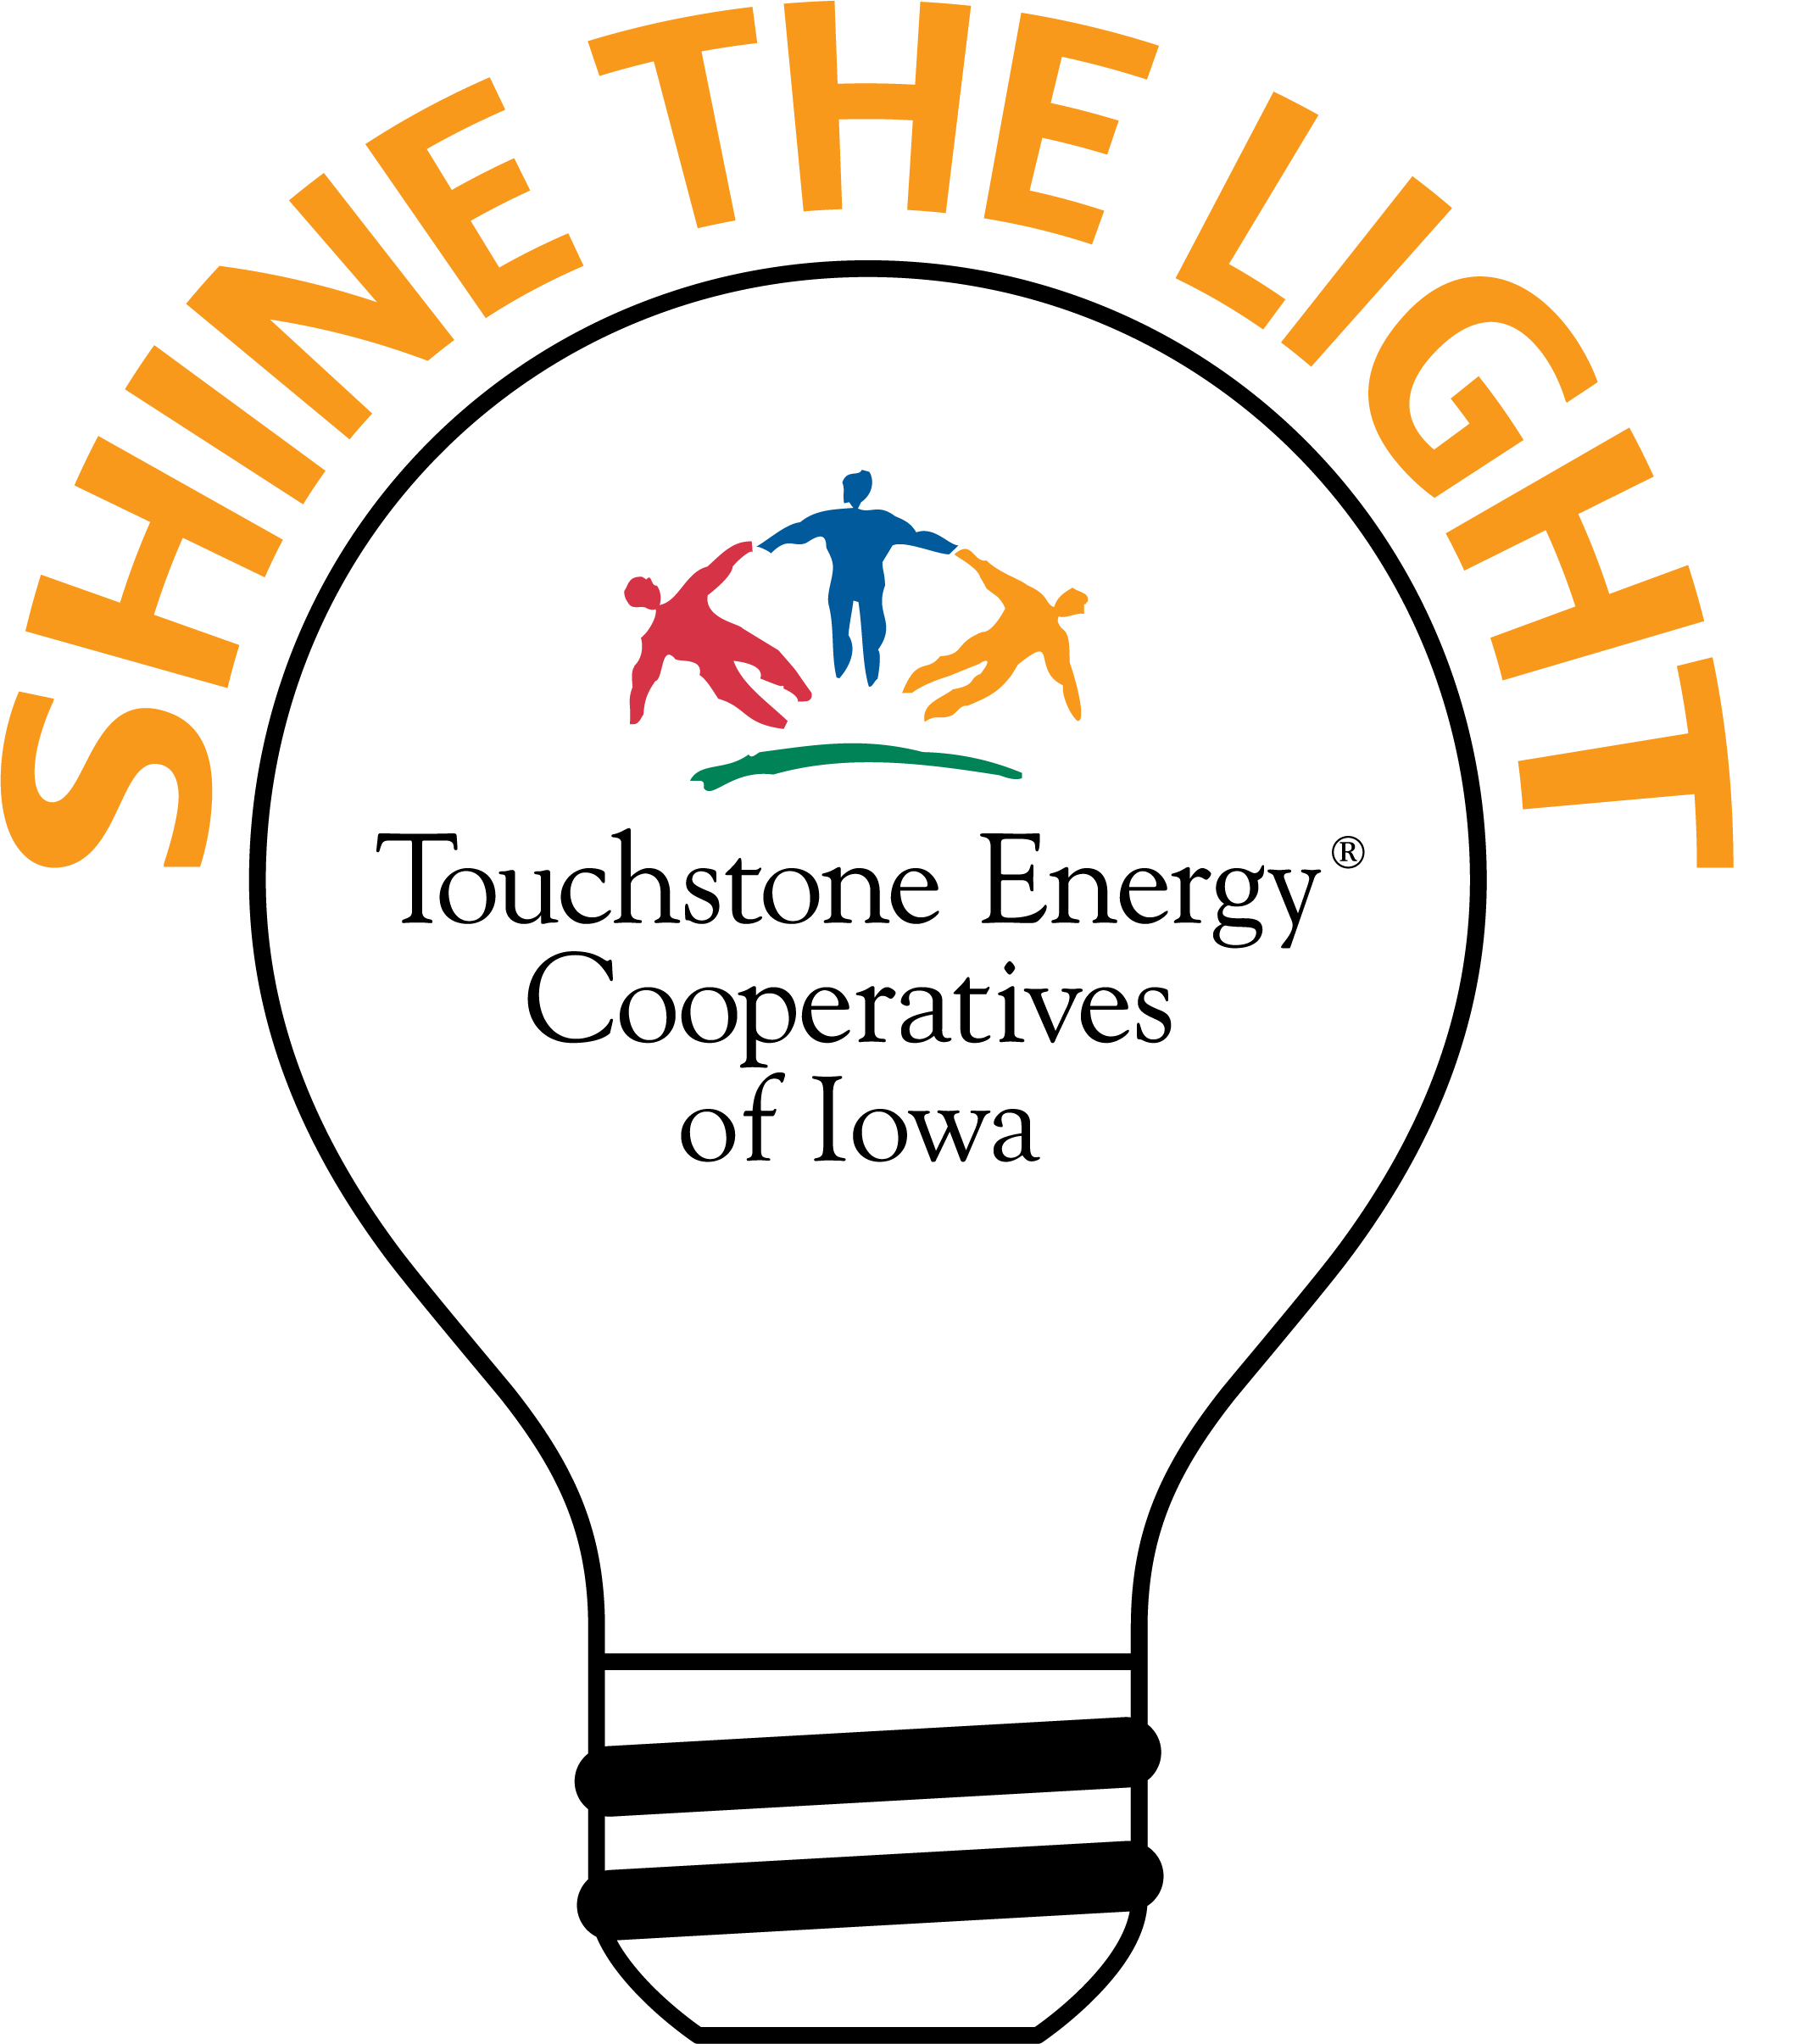 Shine the Light contest logo